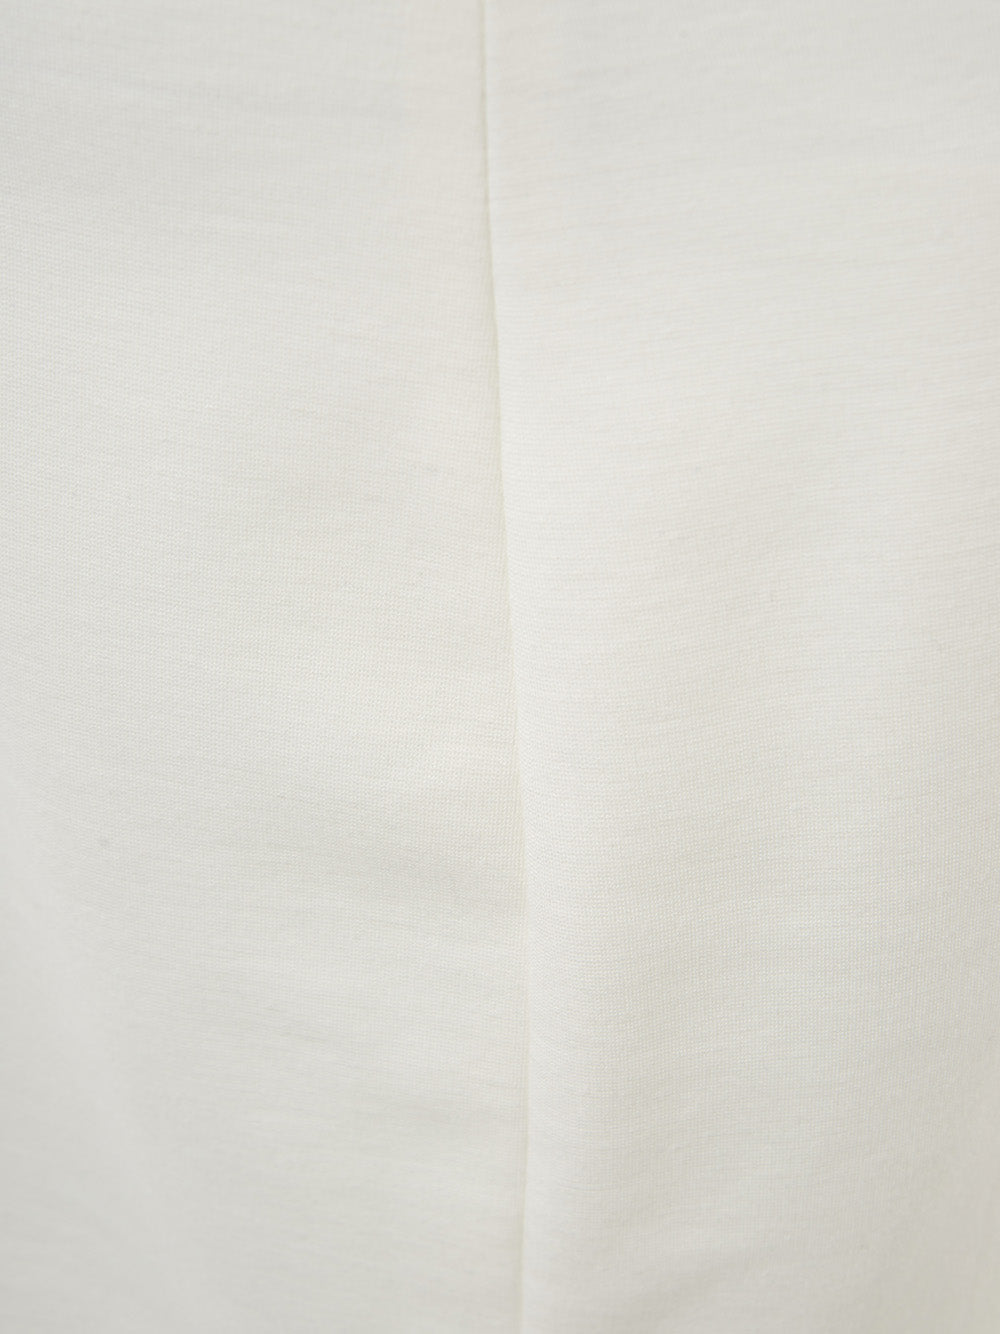 Elegant White Pencil Skirt